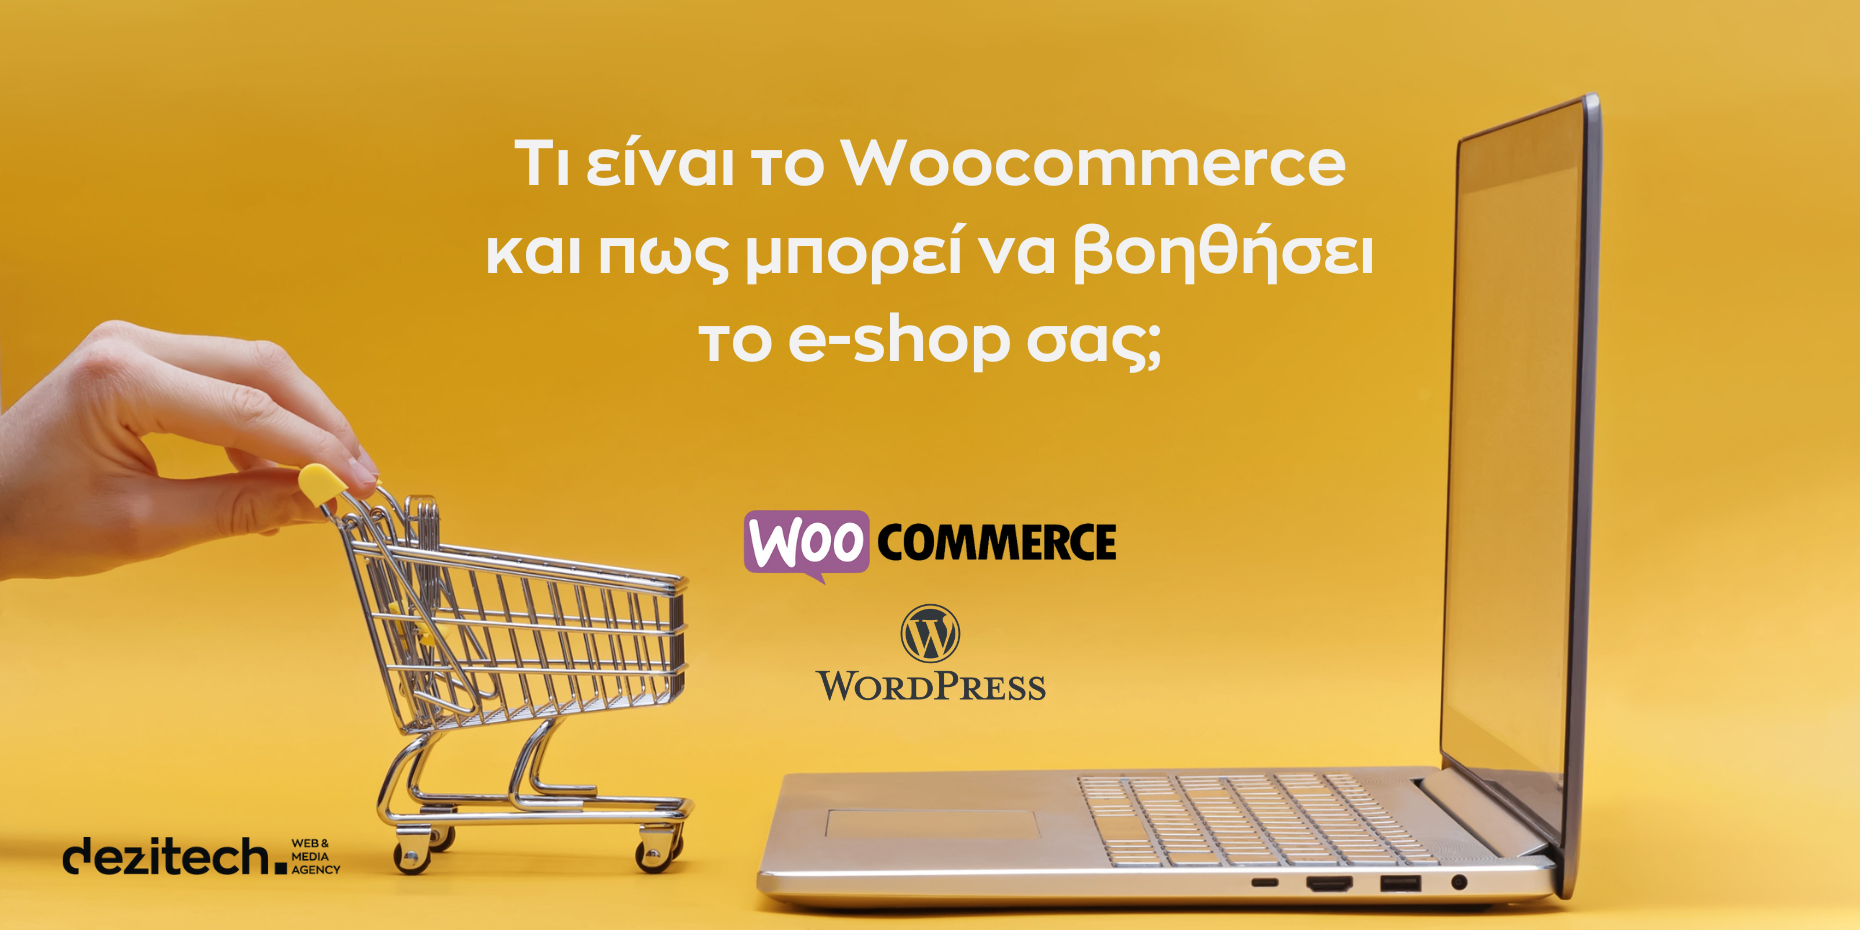 Τι είναι το Woocommerce και πως μπορεί να βοηθήσει το e-shop σας;